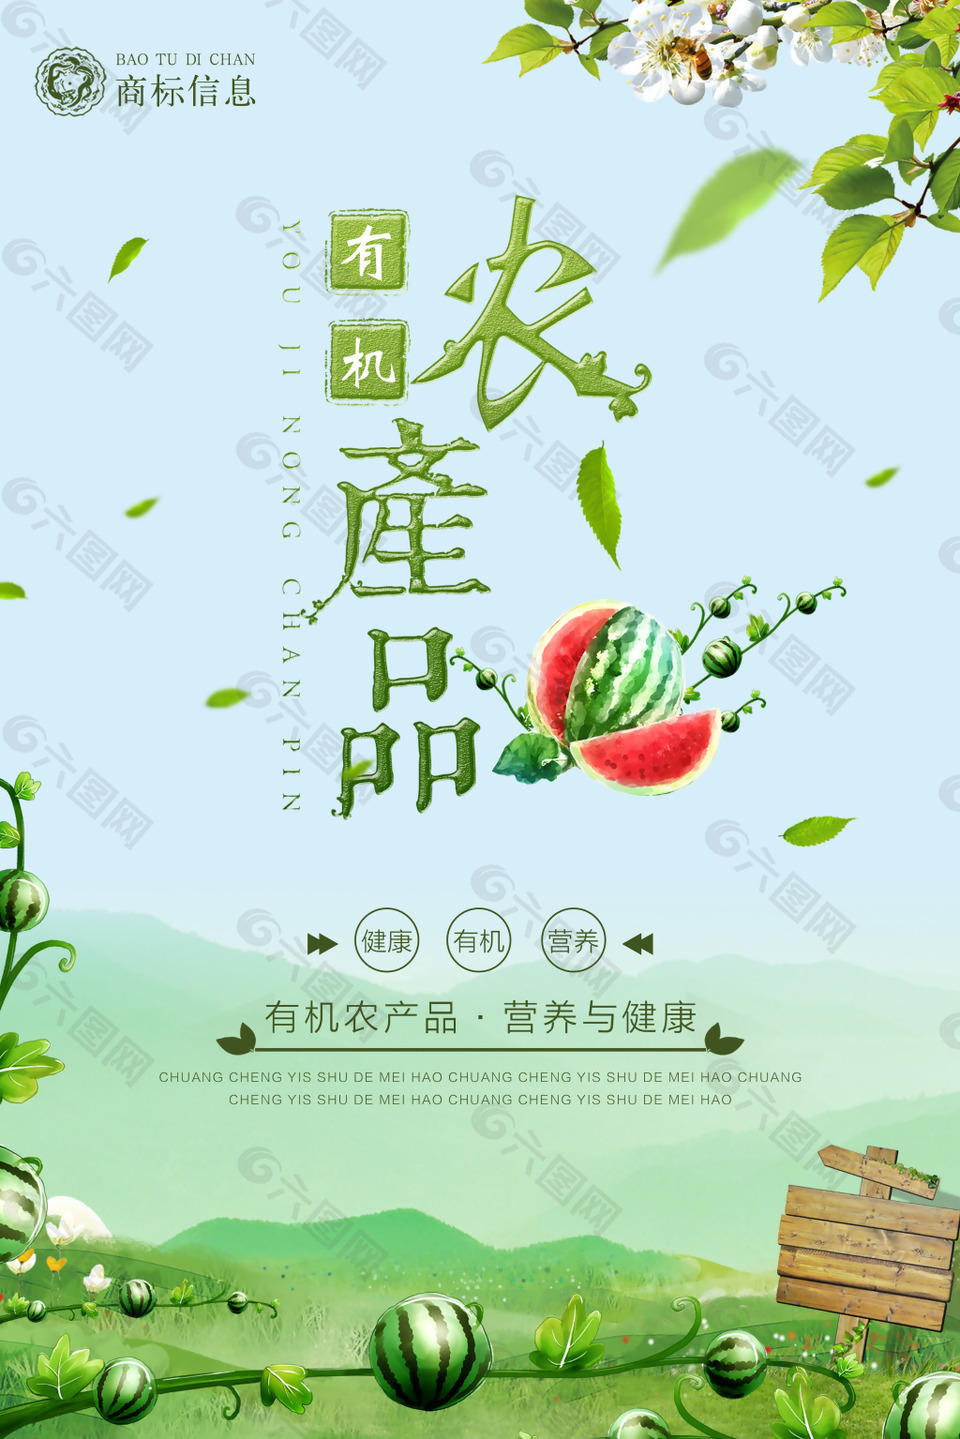 绿色有机农产品宣传海报